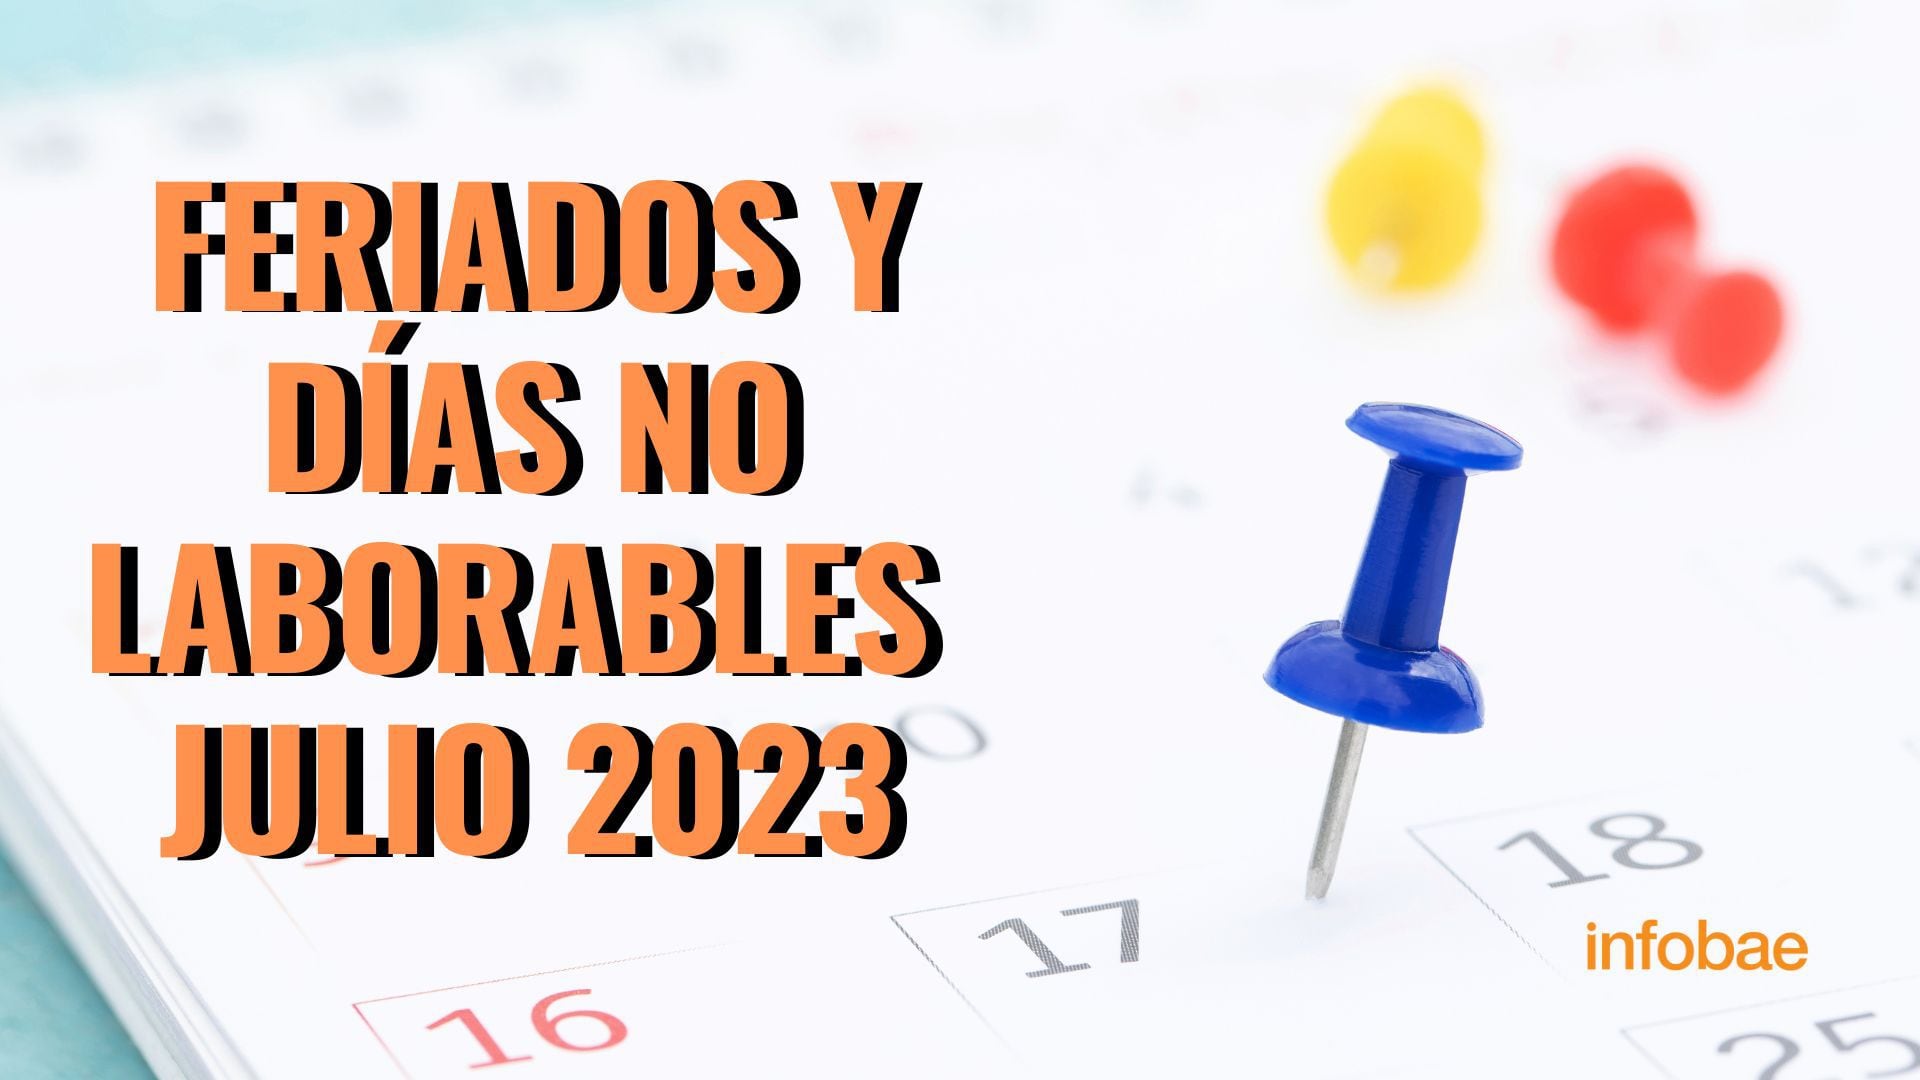 Feriados En Madrid 2023 Feriados y días no laborables confirmados de julio 2023 - Infobae